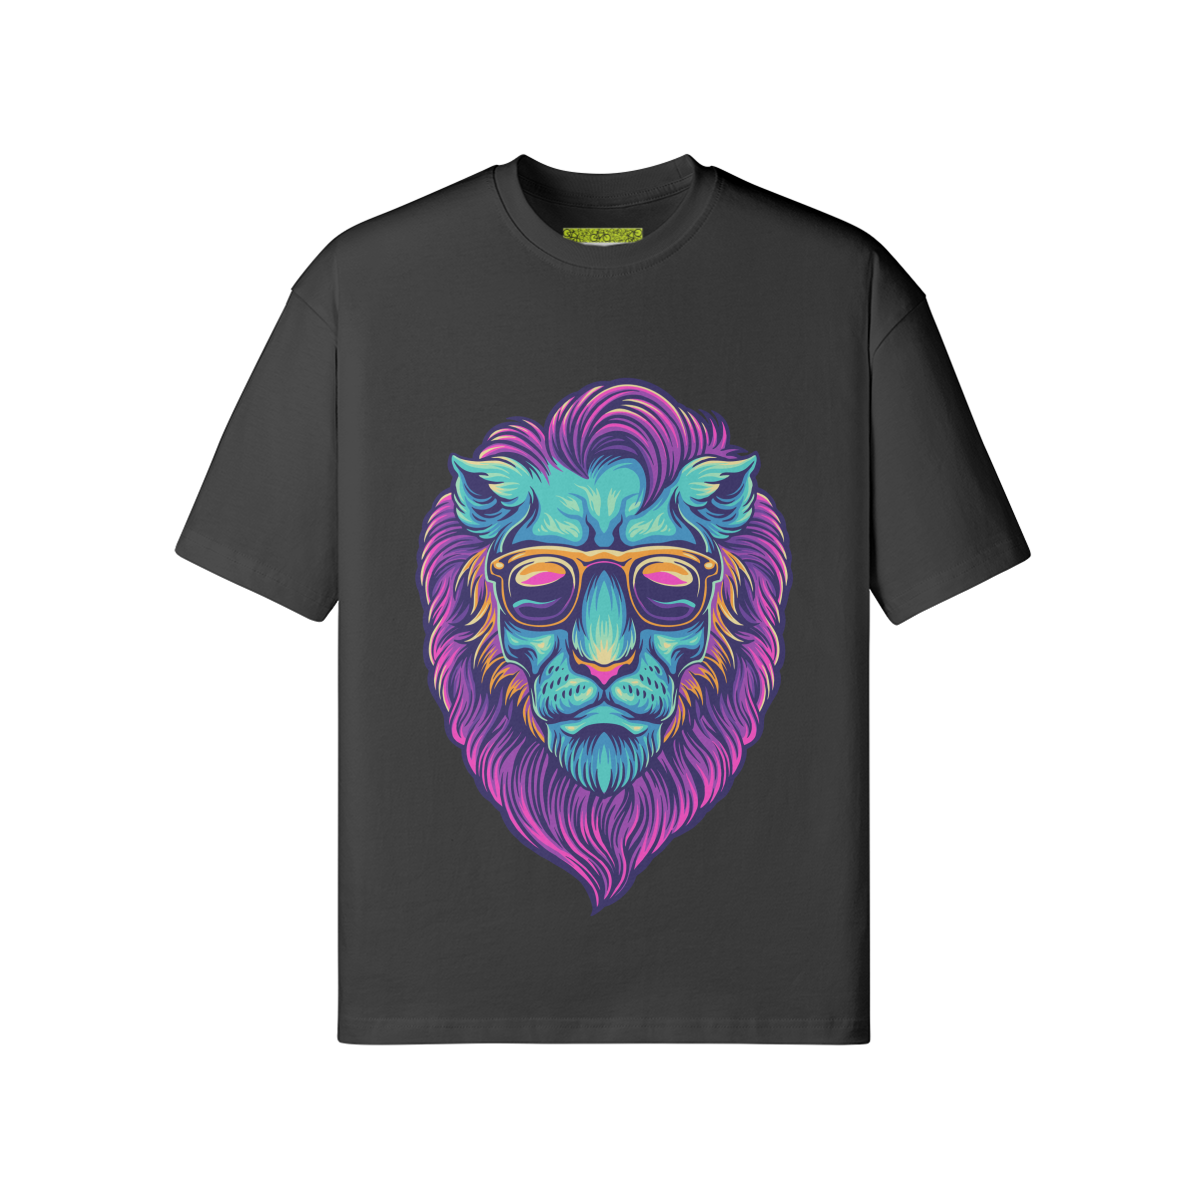 LION TRIP - Unisex Loose T-shirt